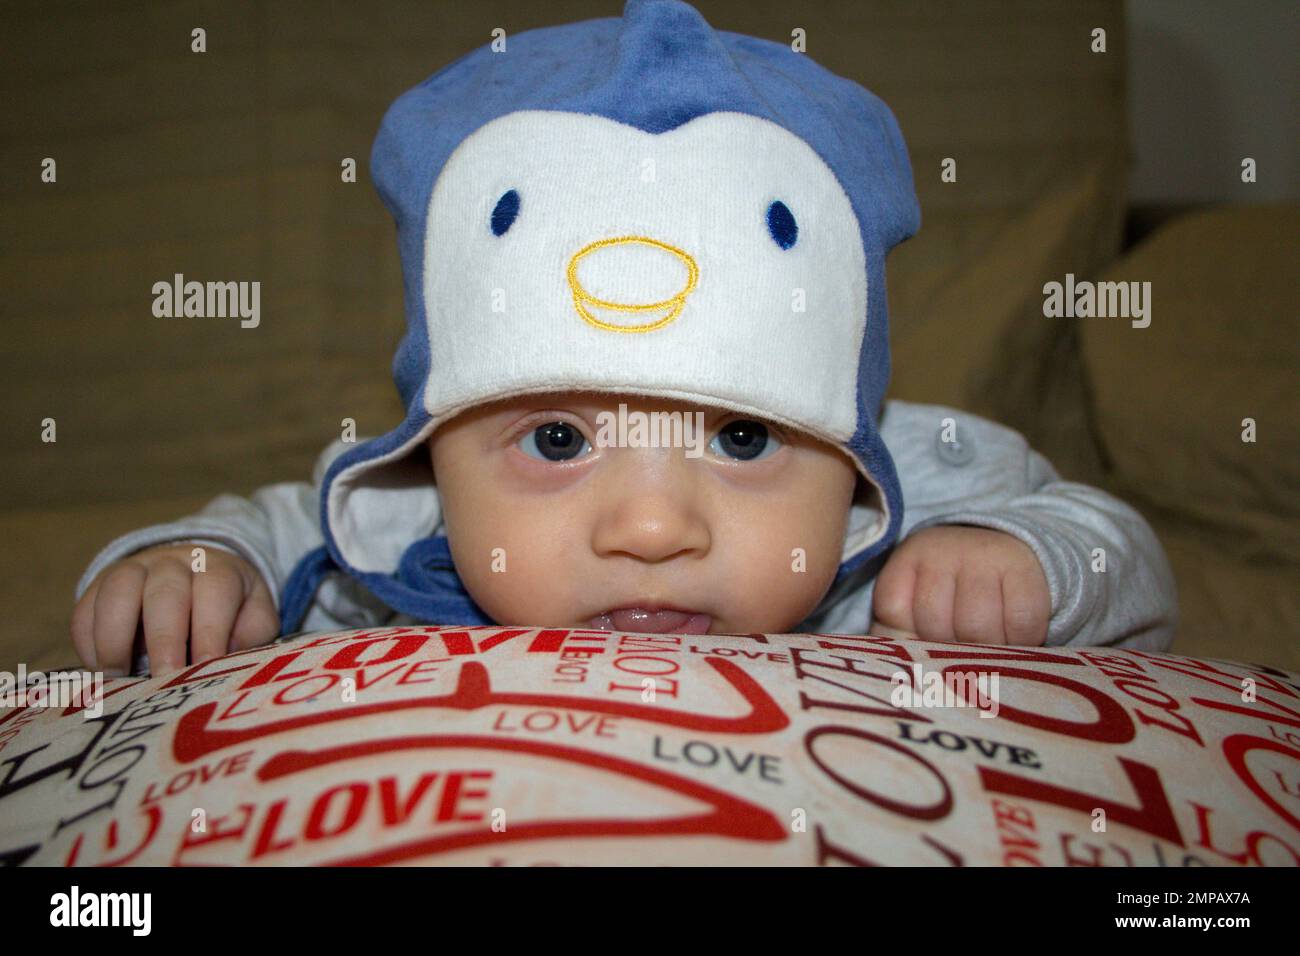 Immagine di un adorabile neonato che appoggia la testa su un cuscino indossando un cappello di pinguino. Foto Stock